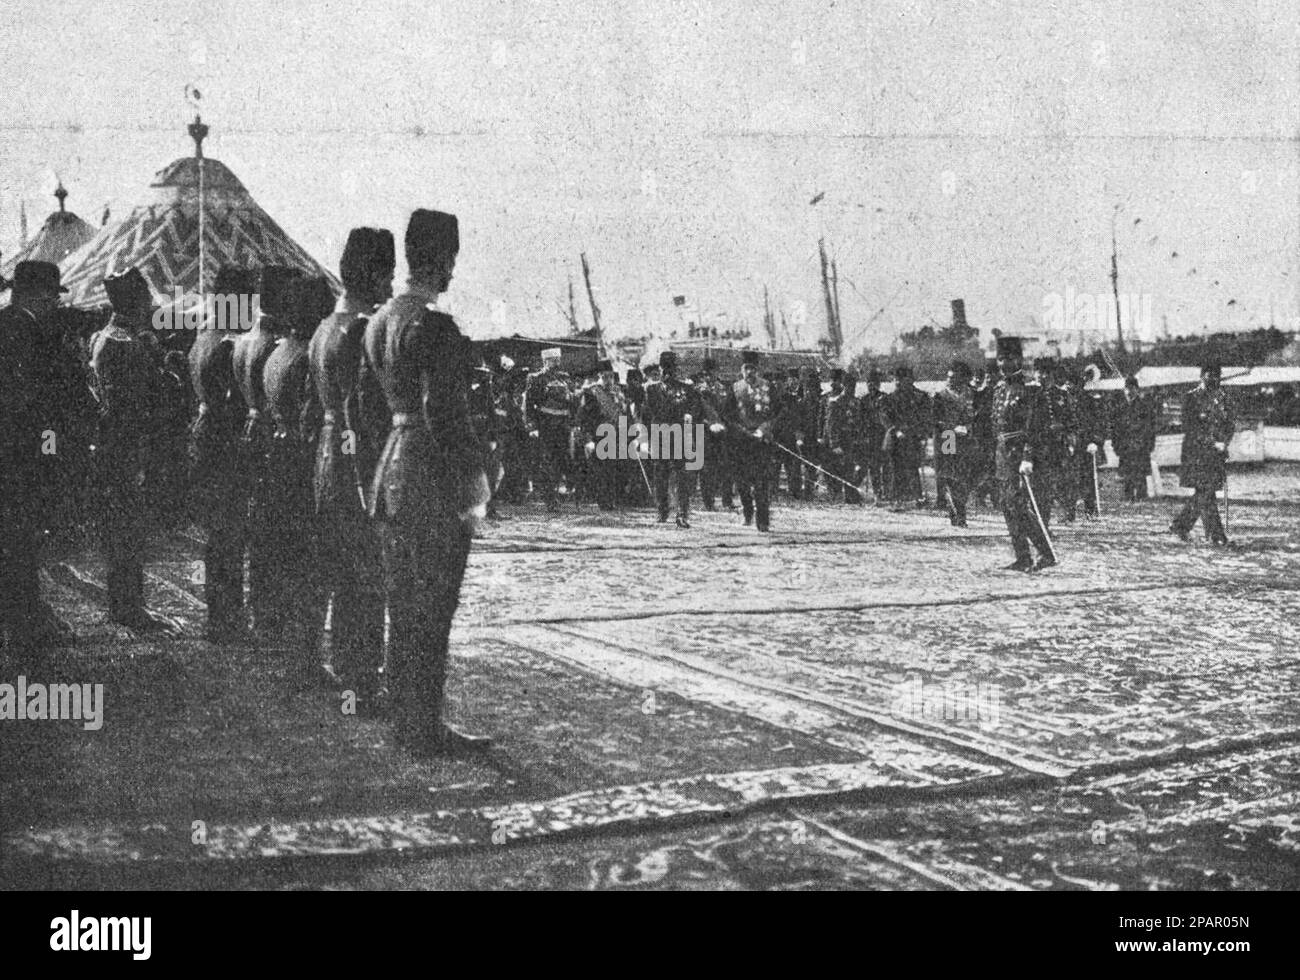 Arrivo di Ferdinando i di Bulgaria a Costantinopoli. Foto dal 1910. Foto Stock